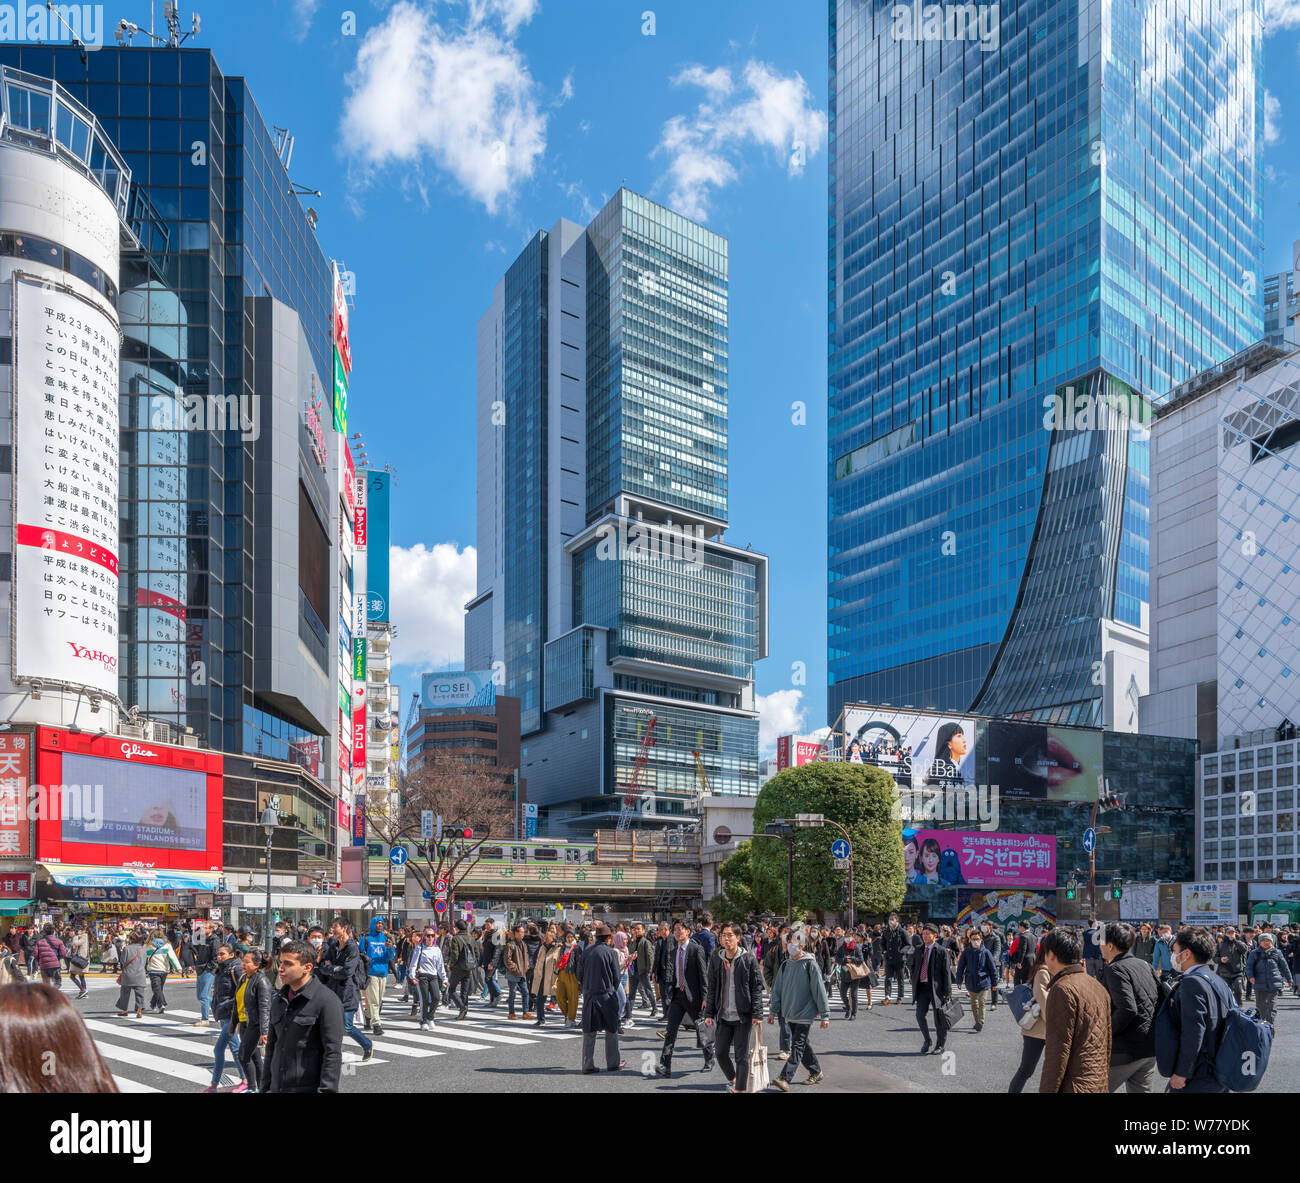 Croisement de Shibuya, un piéton en diagonale en intersection Hachiko Square, l'un des plus fréquentés du monde, Shibuya, Tokyo, Japon Banque D'Images